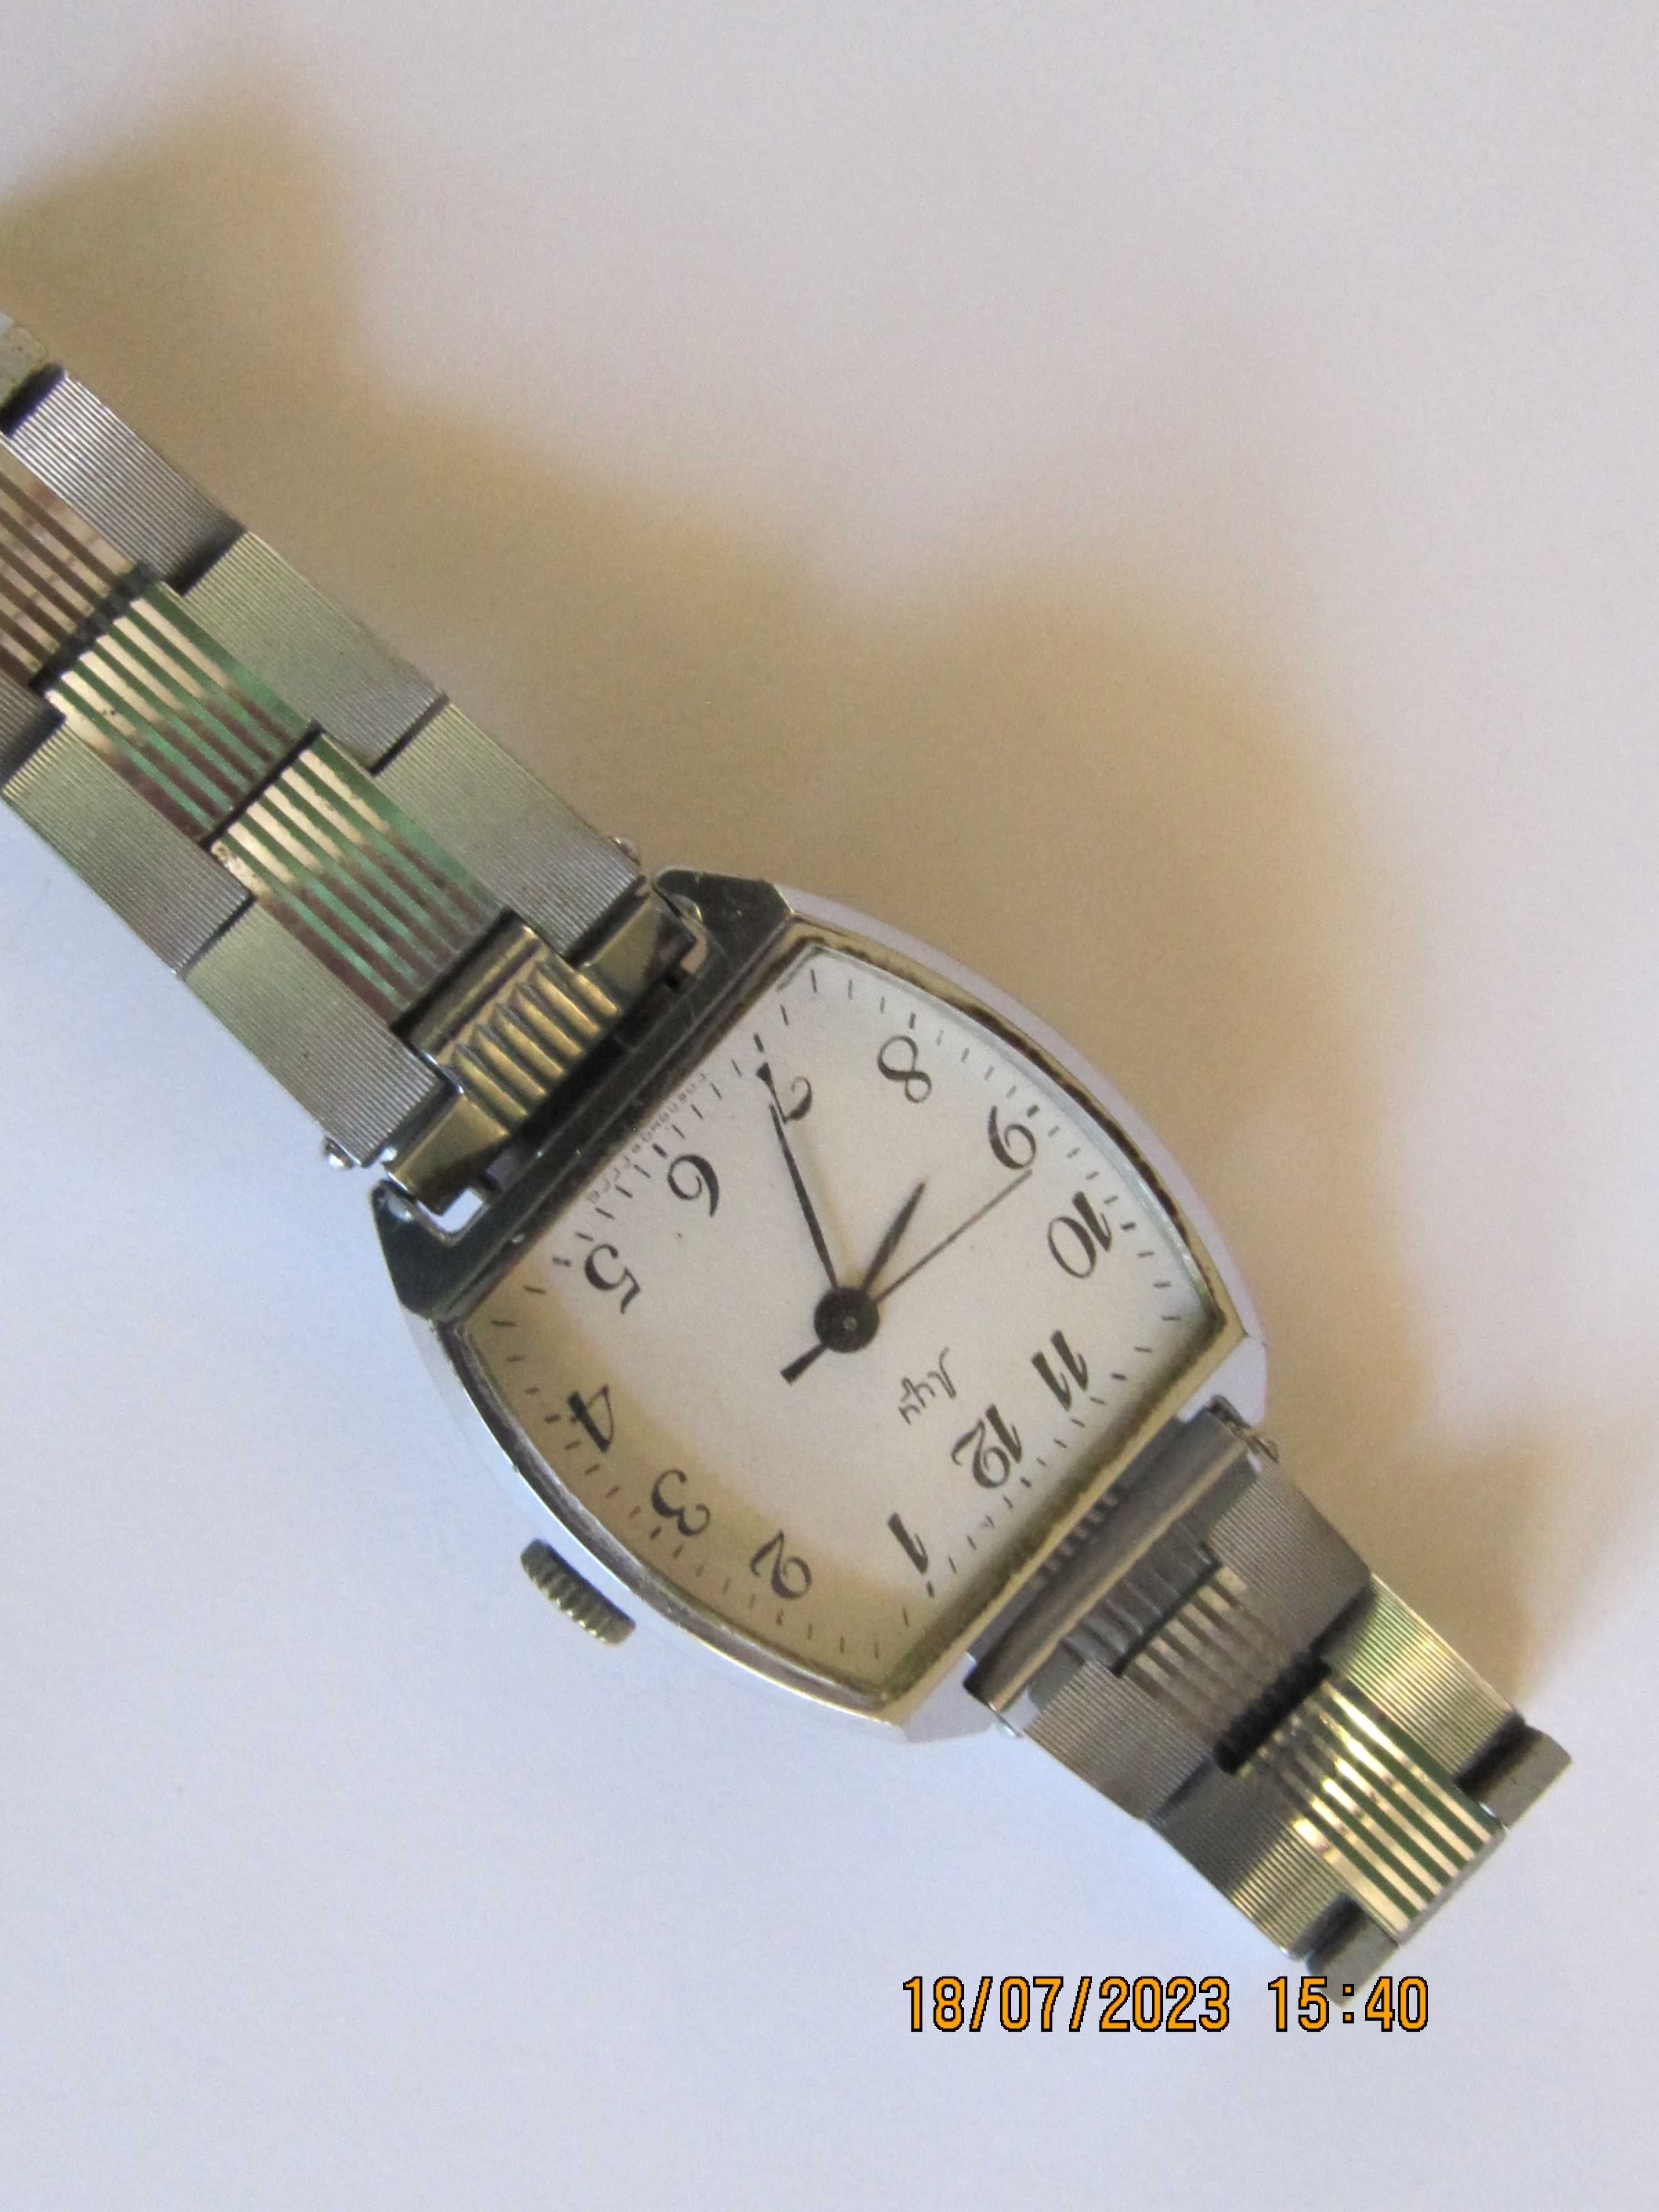 Łucz radziecki zegarek mechaniczny 17 k